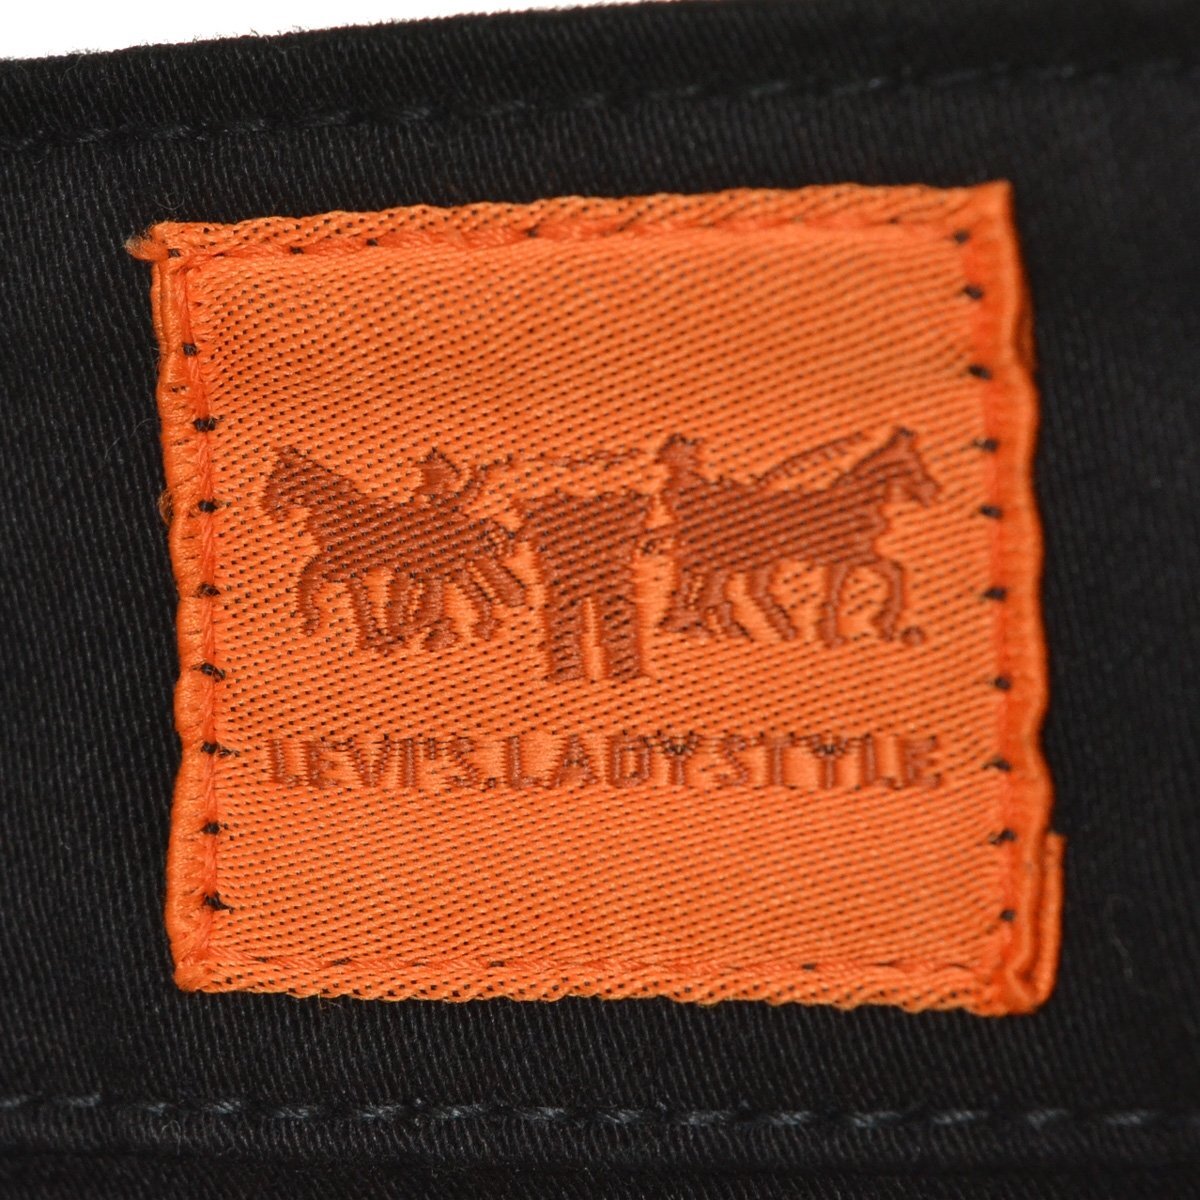 ◇399726 Levi's リーバイス ストレッチ クロップド カラーパンツ 7分丈パンツ サイズ27インチ コットン 100% レディース ブラック_画像5